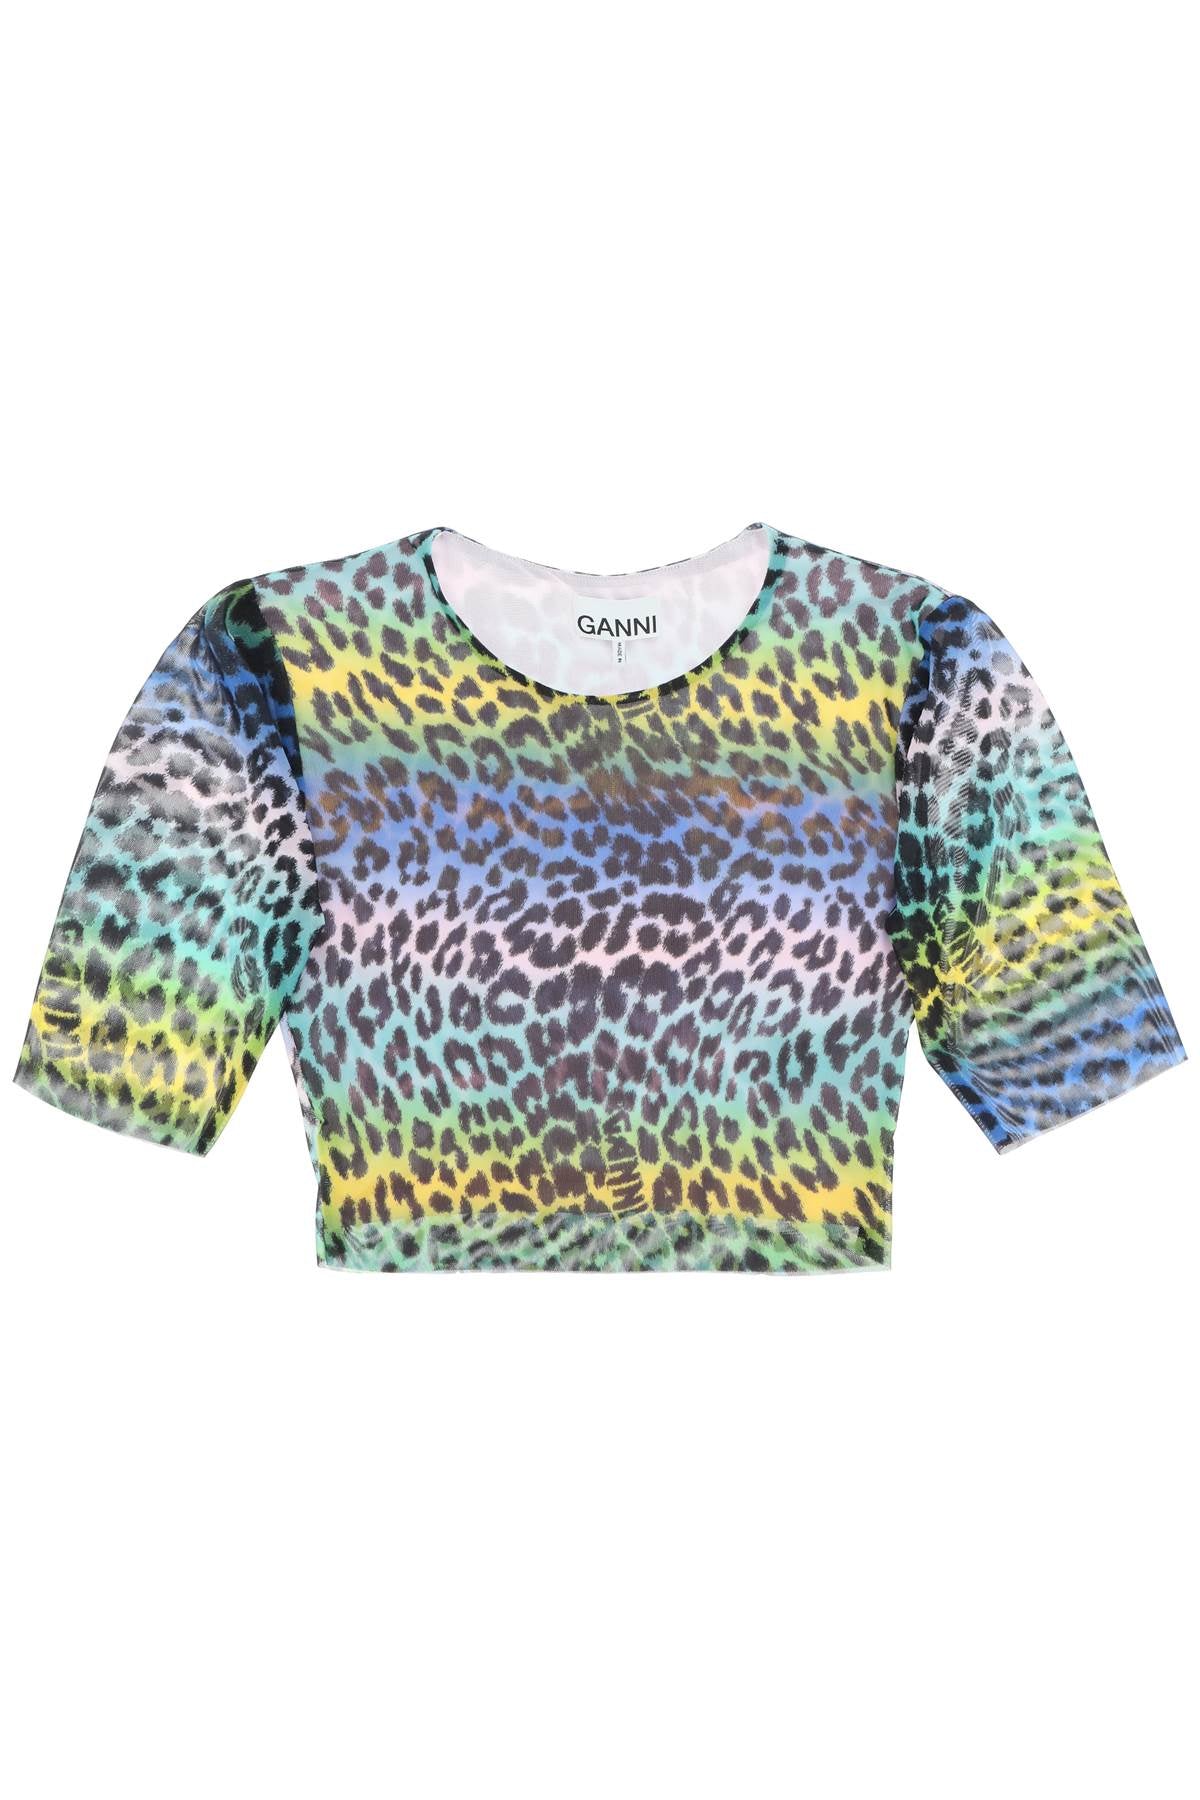 Ganni multicolor leopard print crop top-0